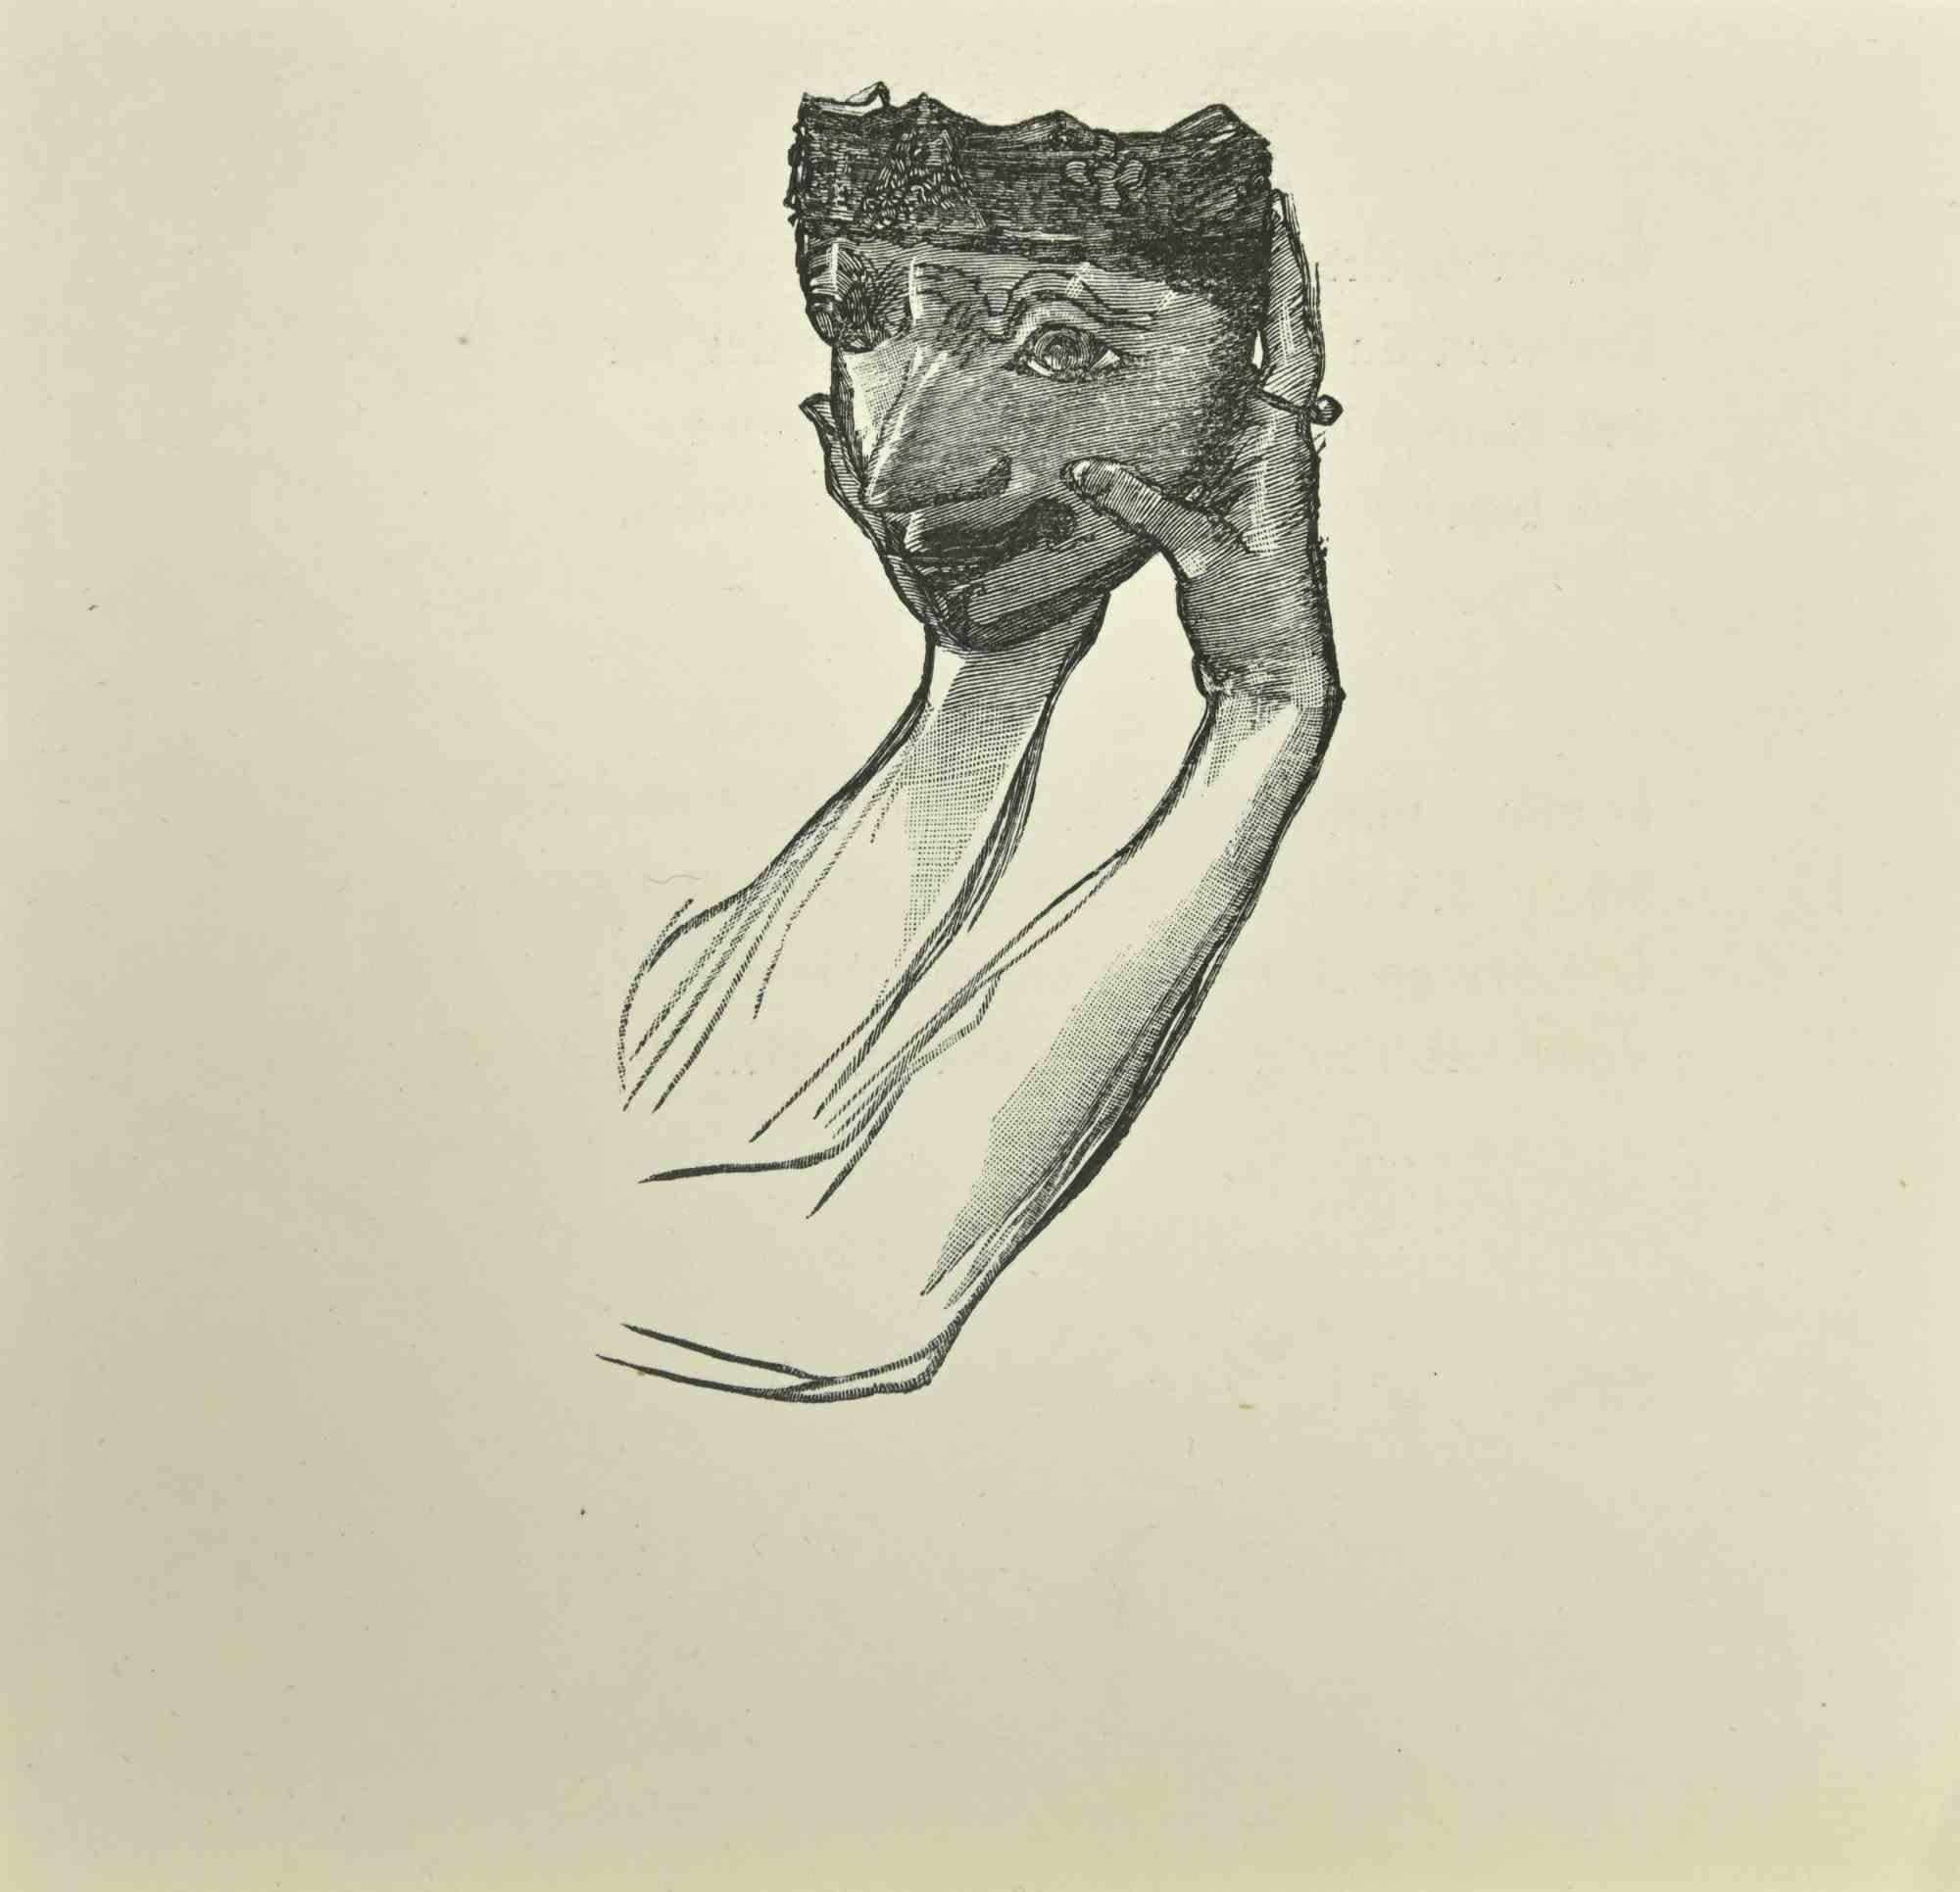 Die Maske ist ein Holzschnitt auf Papier, der nach Jean Paul Sauget für Maurice Magre's Les Soirs d'Opium realisiert wurde.

Veröffentlicht im Jahr 1921.

Gute Bedingungen.